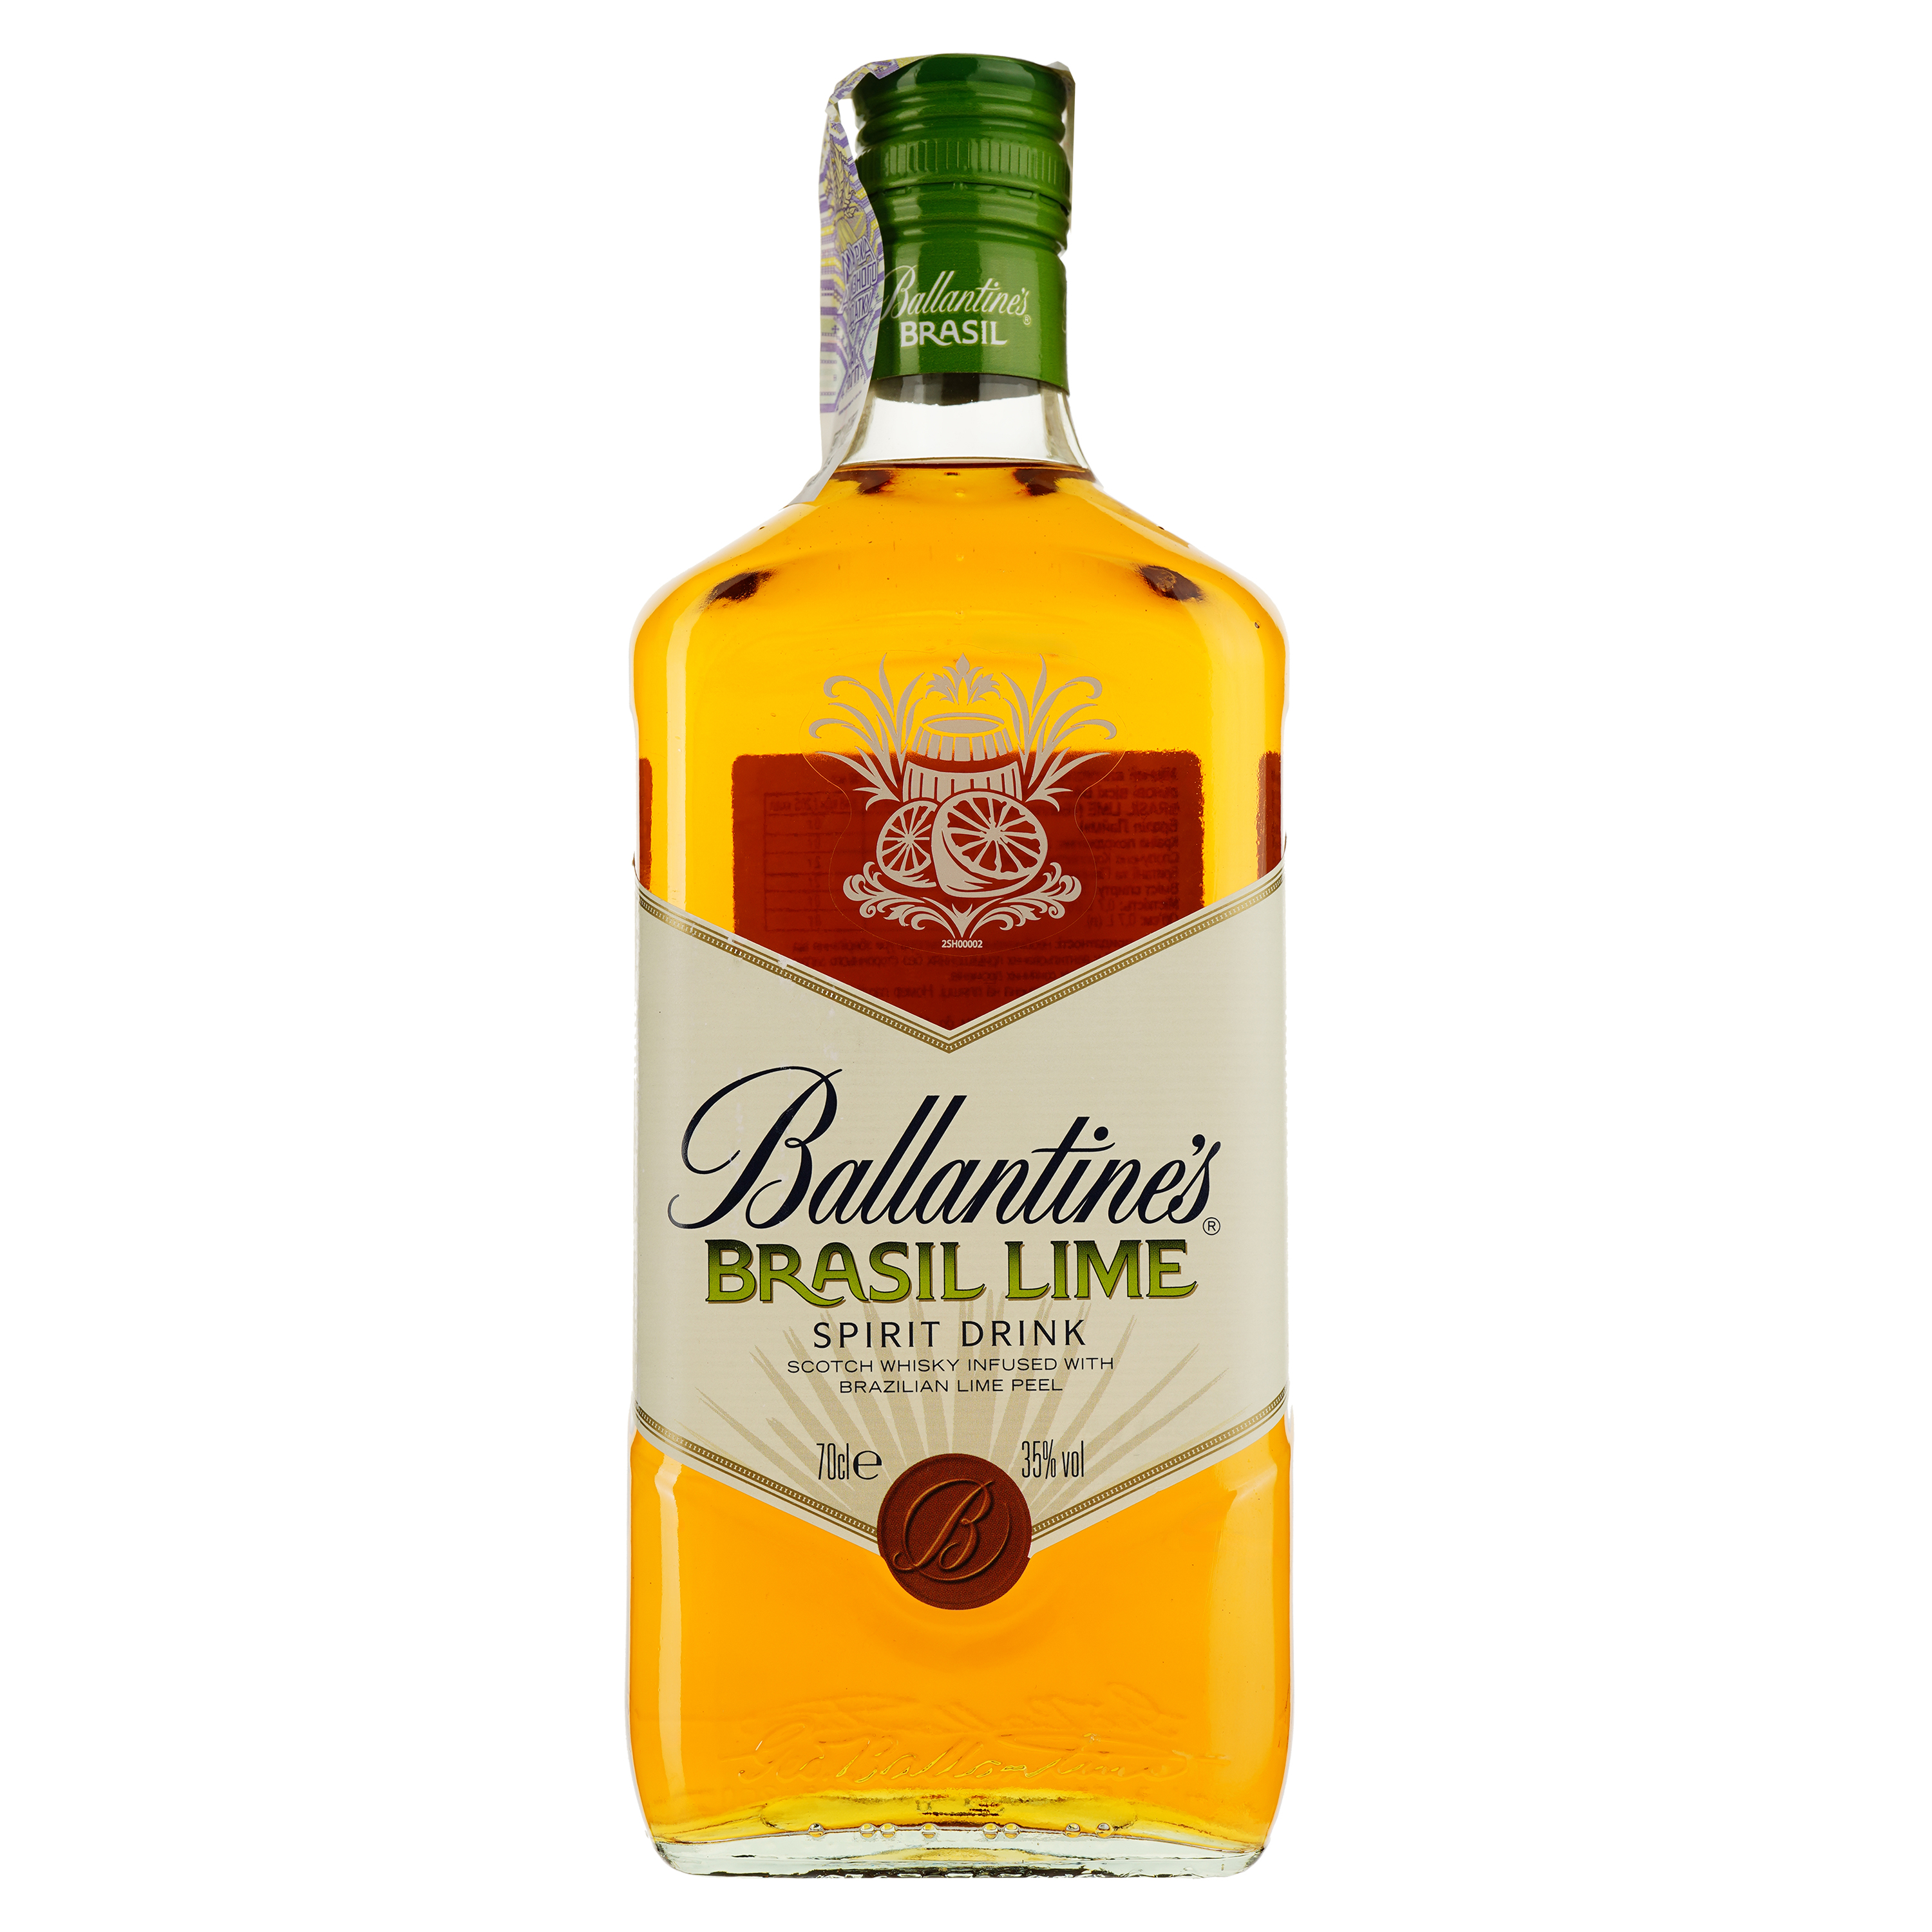 Напиток на основе виски Ballantine's Brasil Lime, 35%, 0,7 л (718464) - фото 1